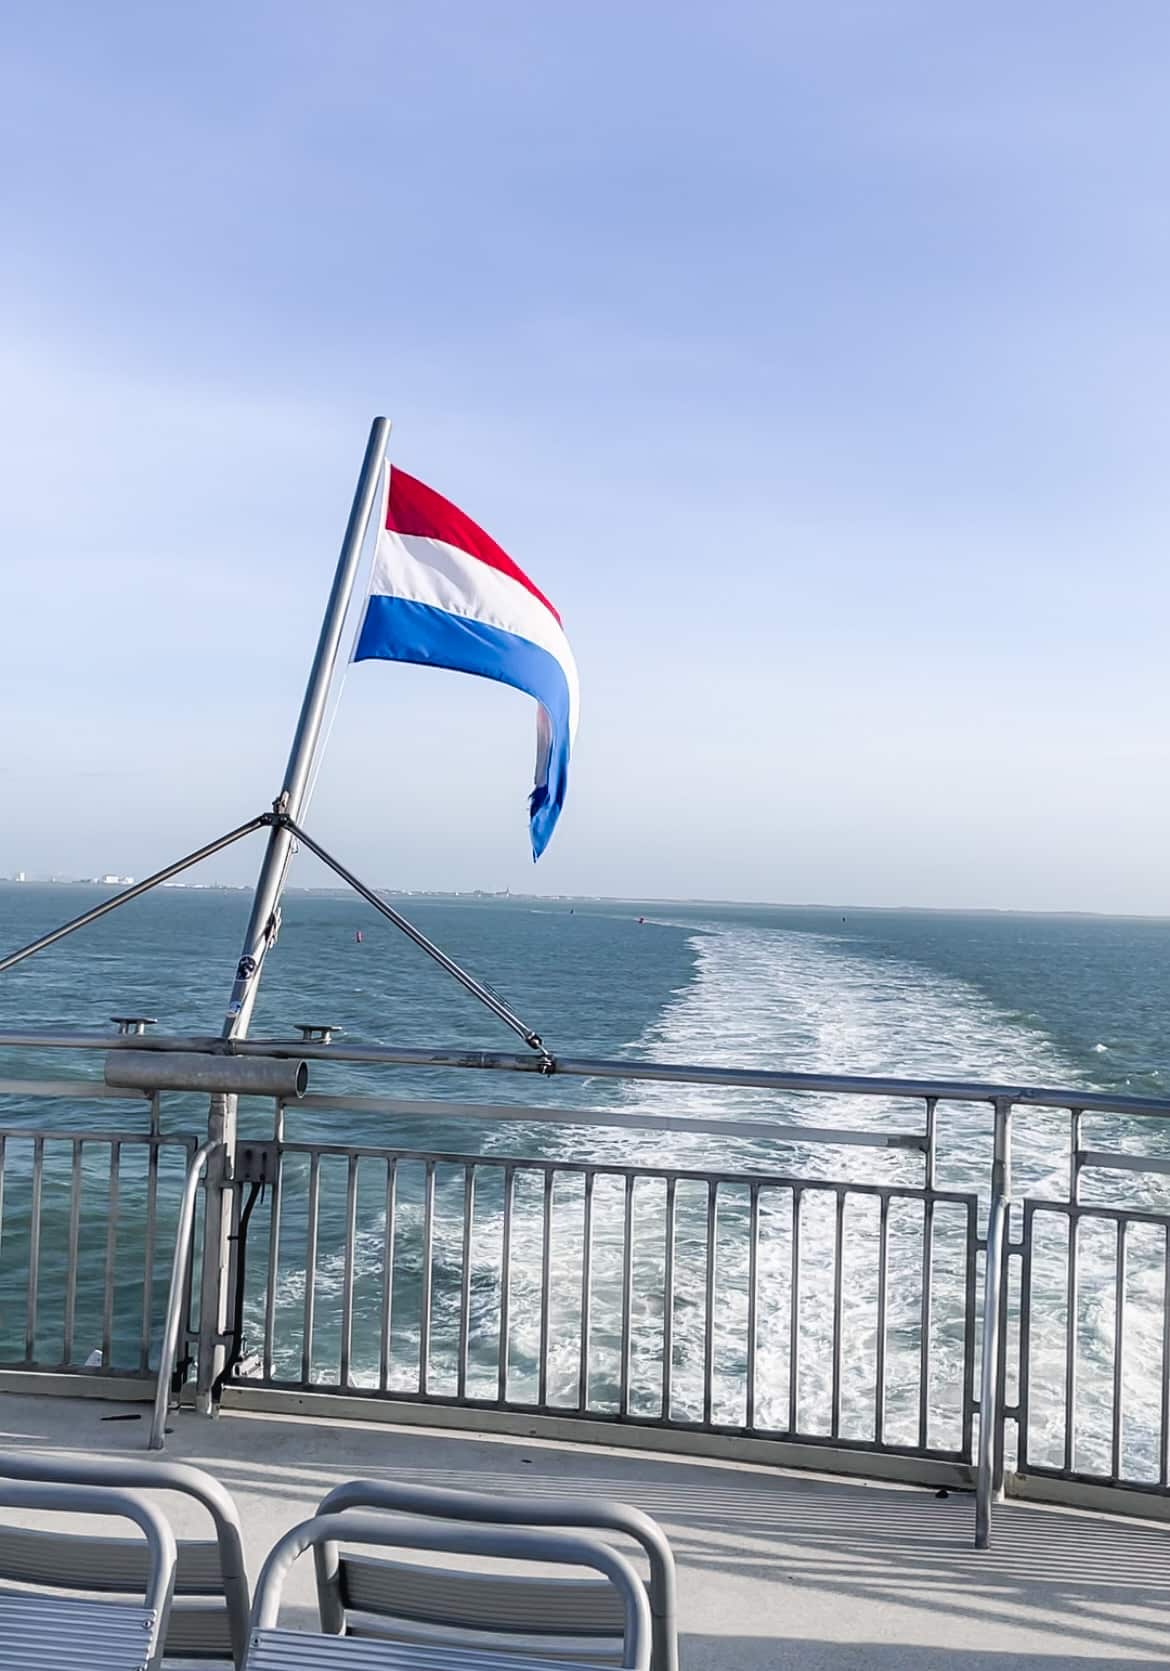 Bemiddelaar dempen frequentie Met de veerboot naar Vlieland, hoe werkt dat? - Travelott